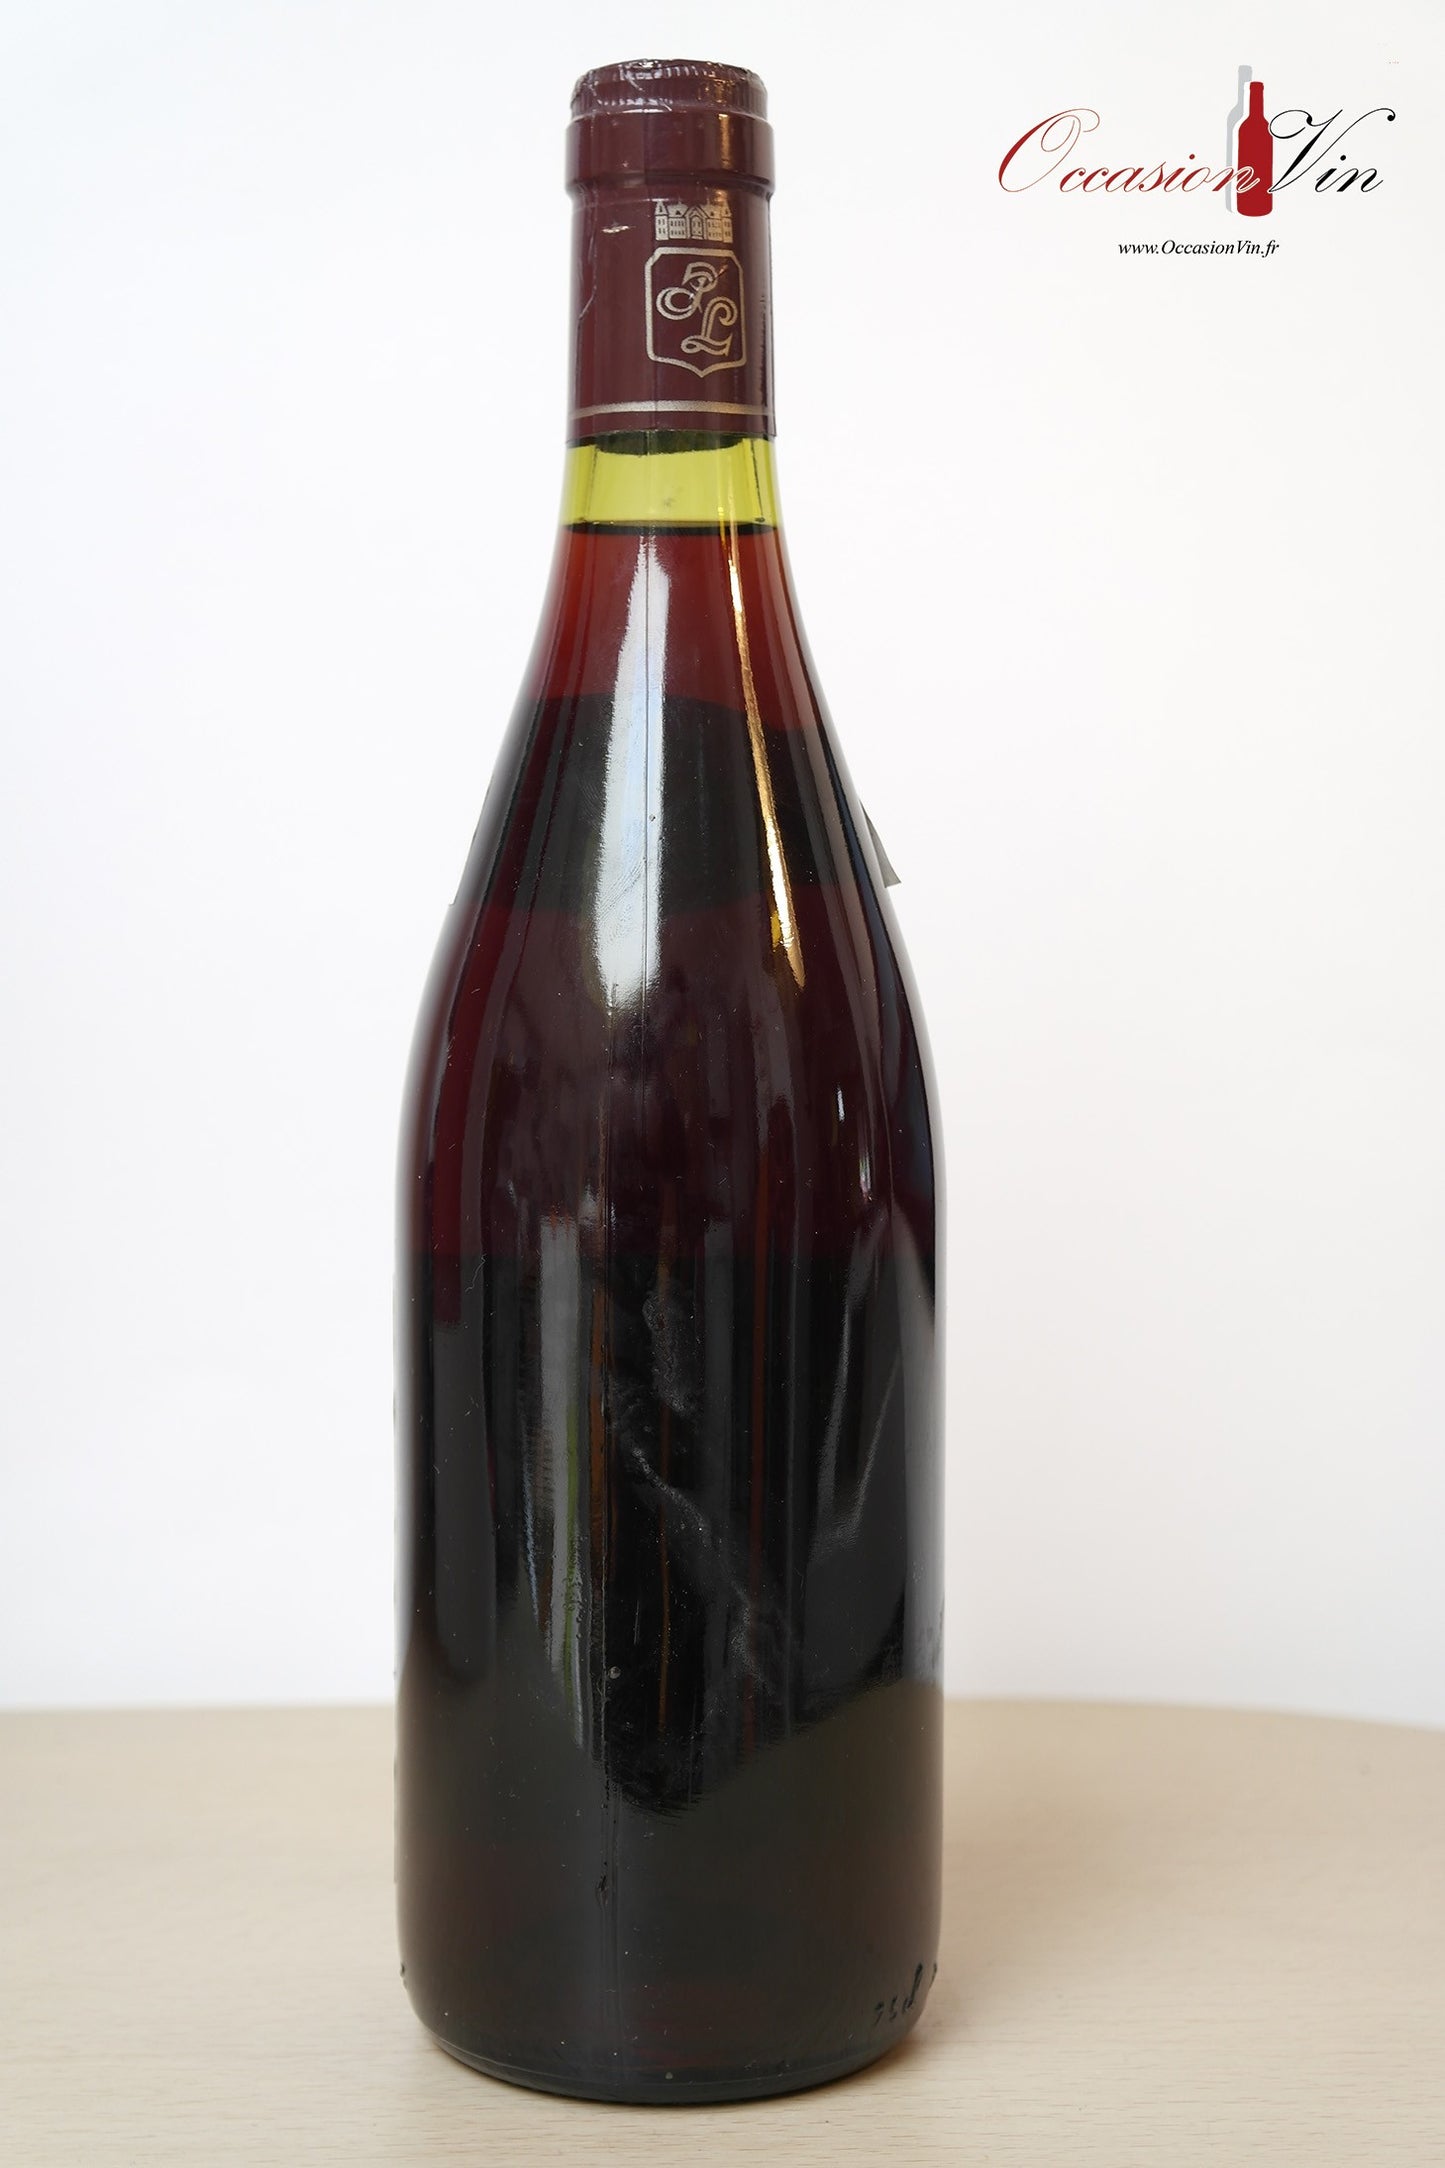 Bourgogne Grand Ordinaire Vin 1986